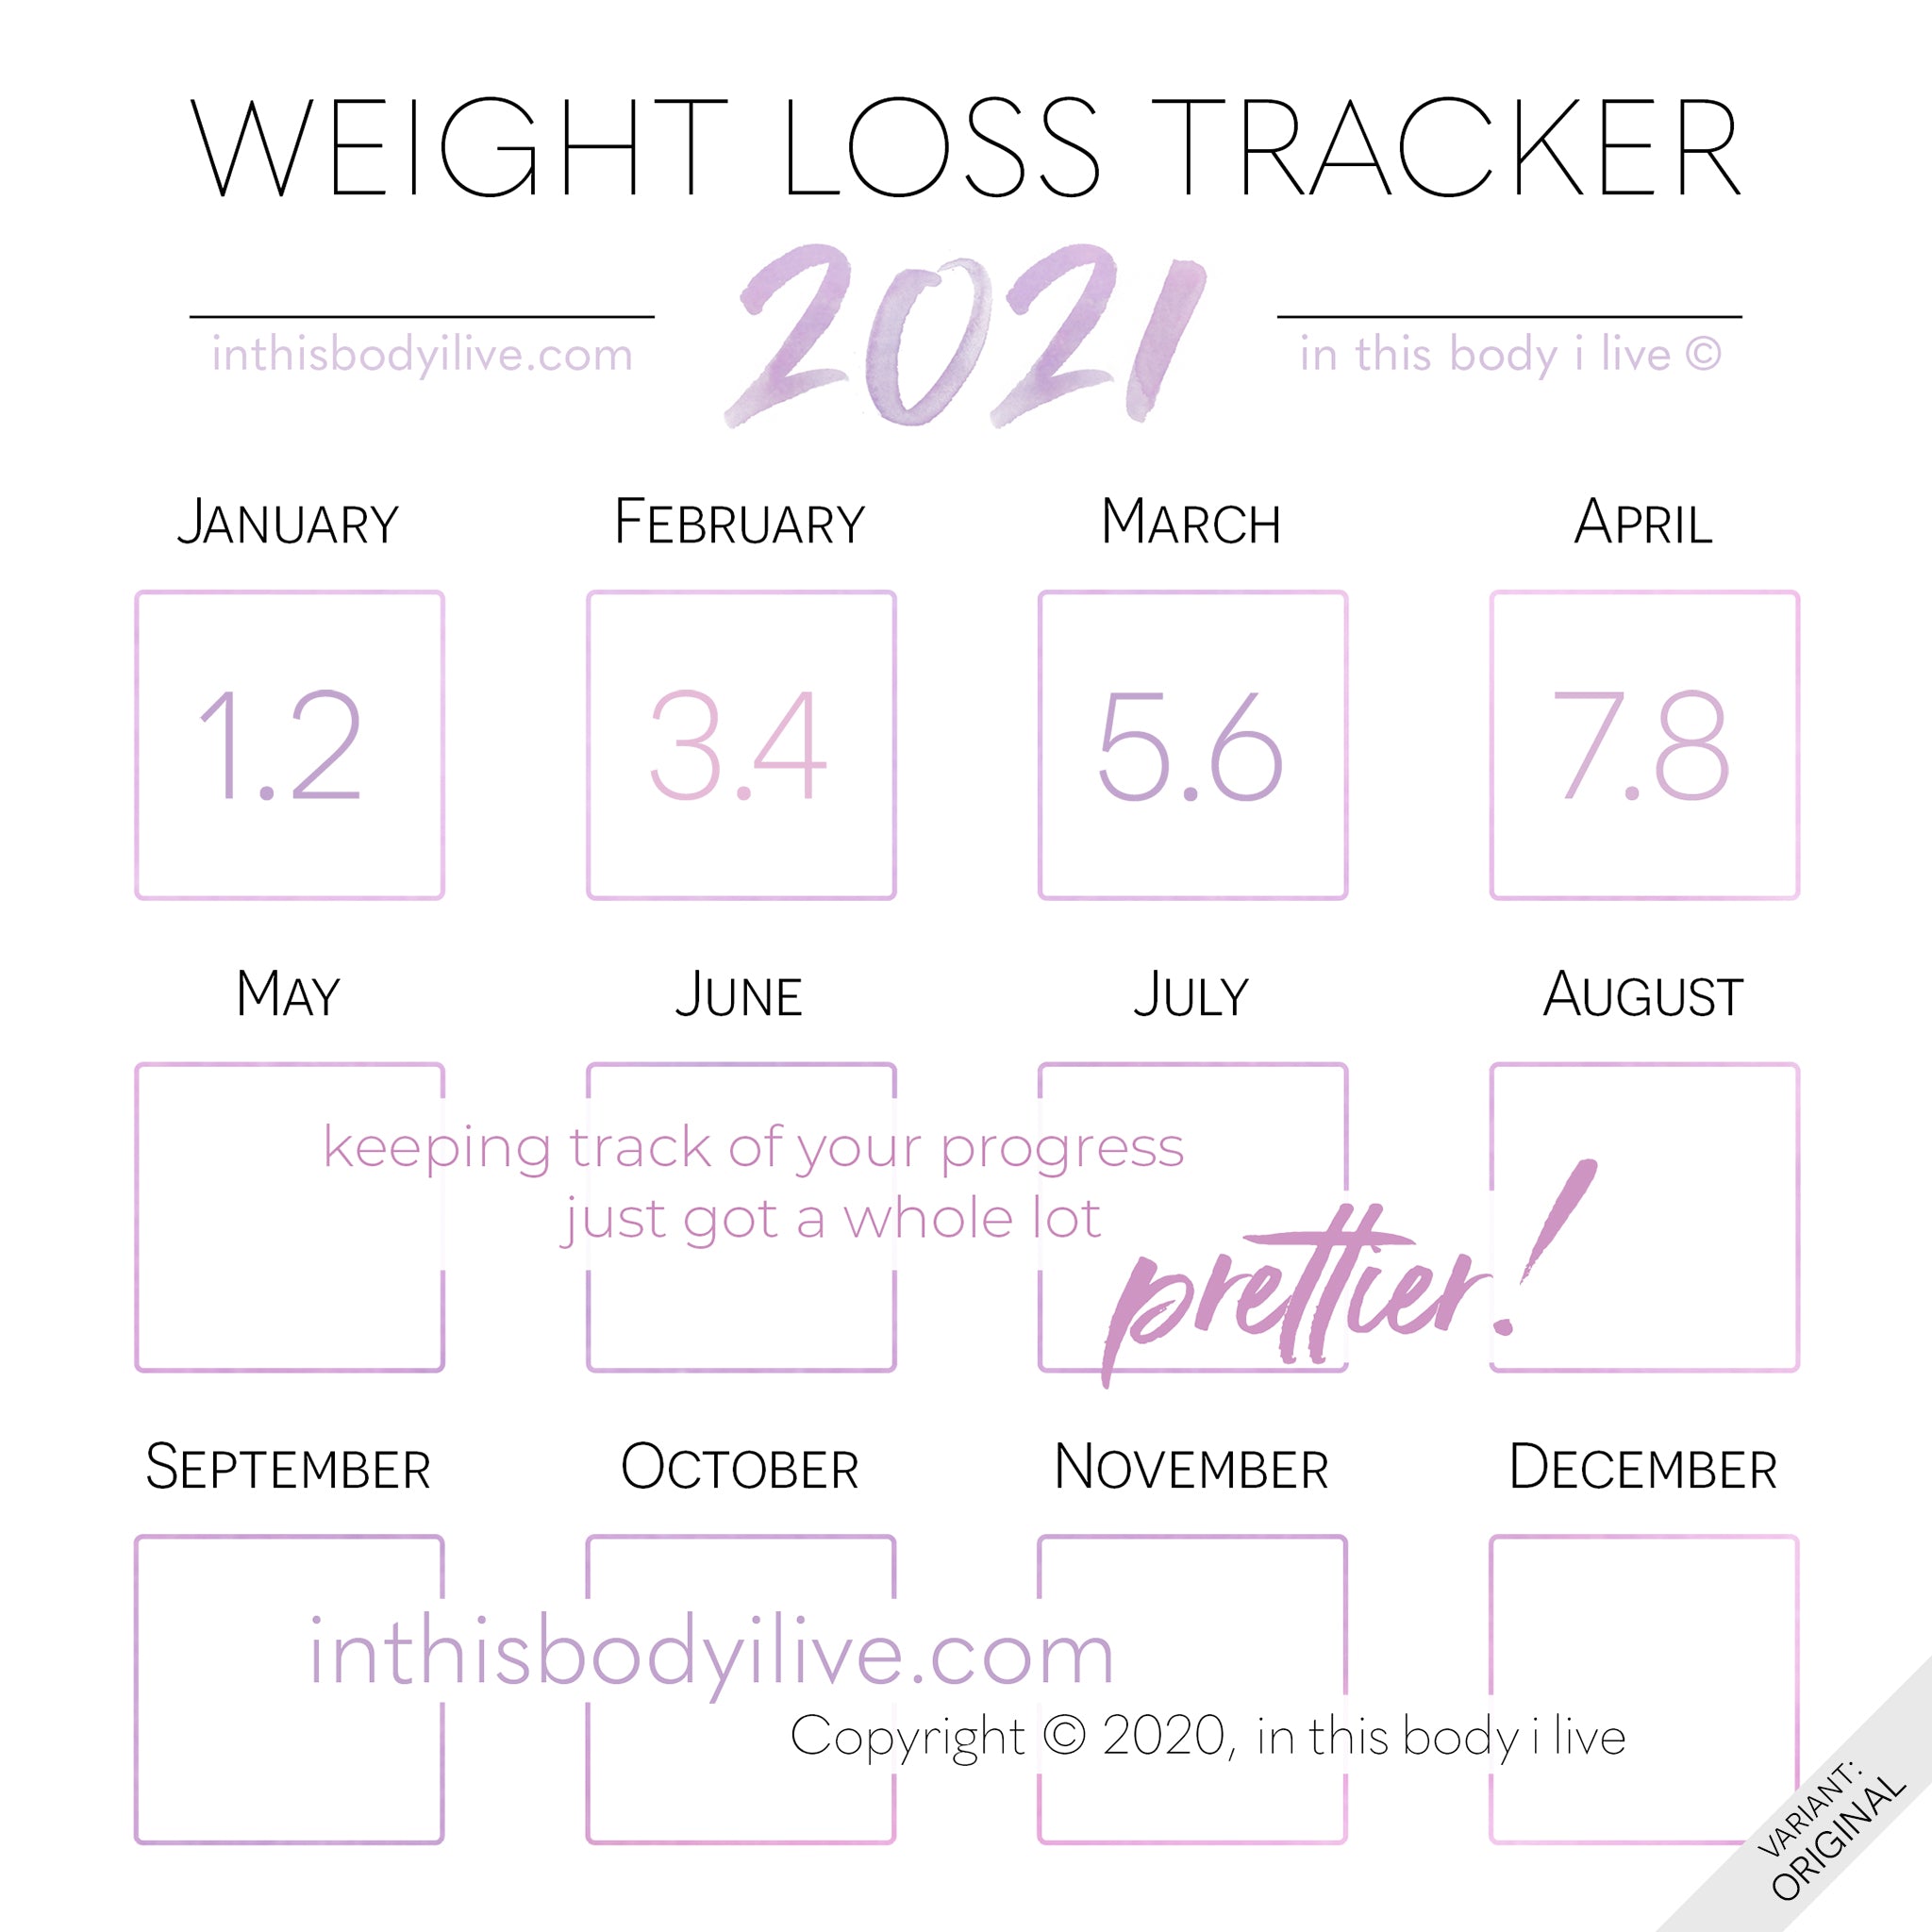 2021 Weight Loss Calendar Weight Loss App Market Outlook 2021 Big